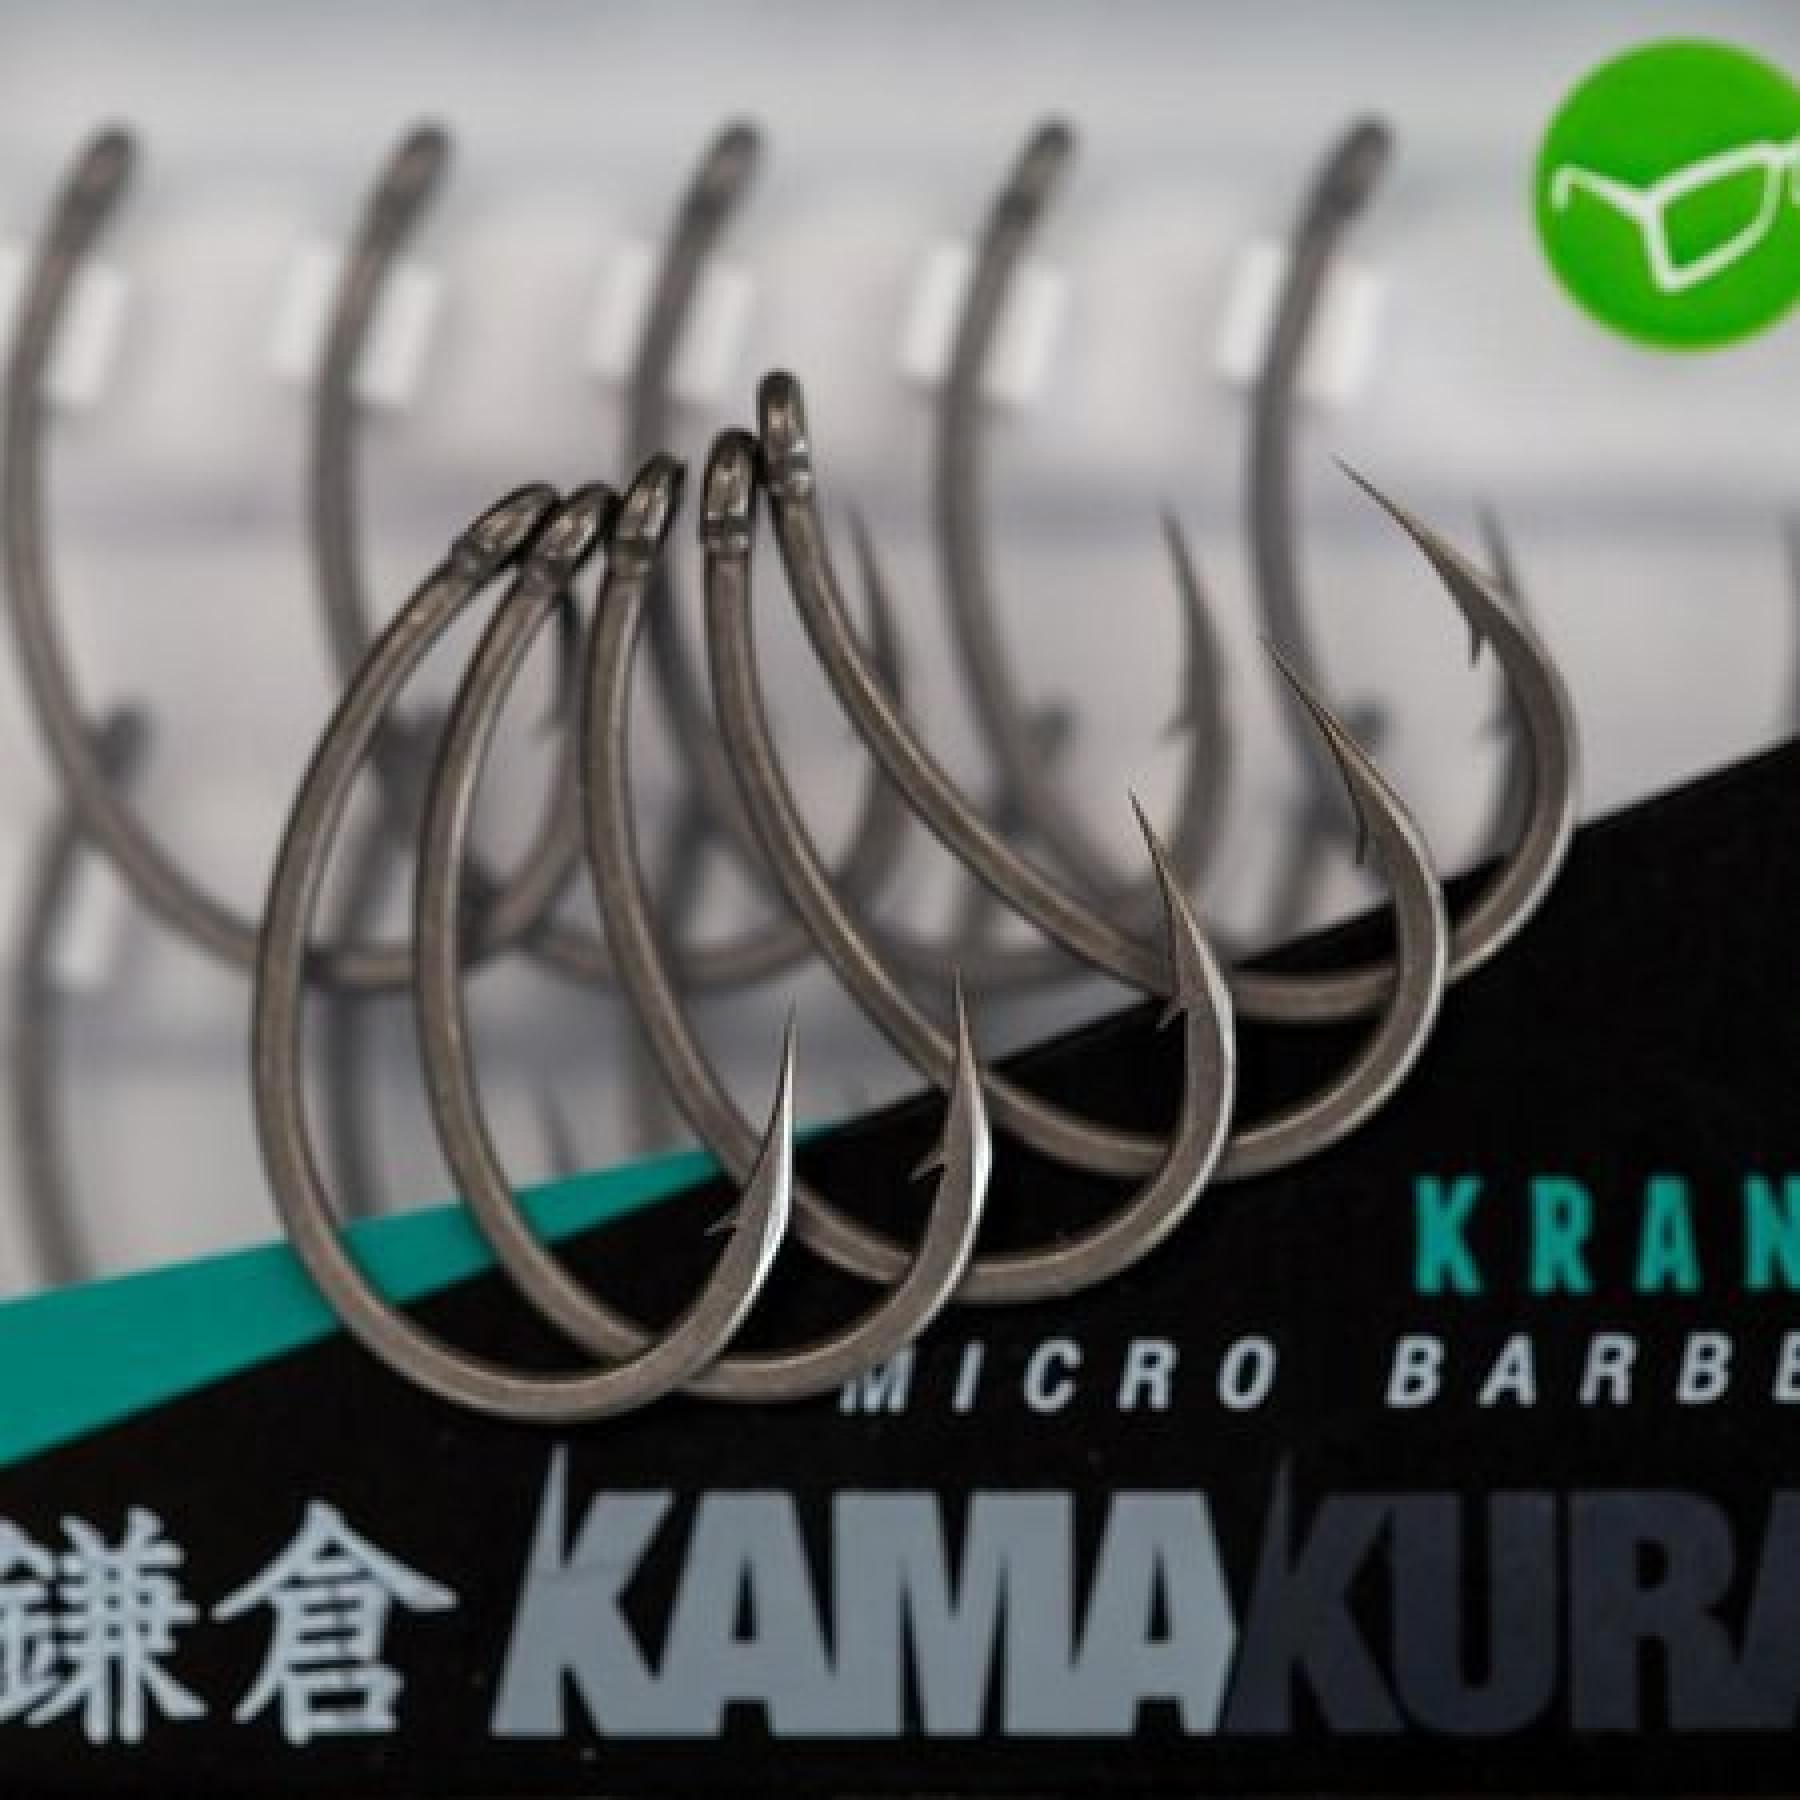 Hak korda Kamakura Krank Barbless S8